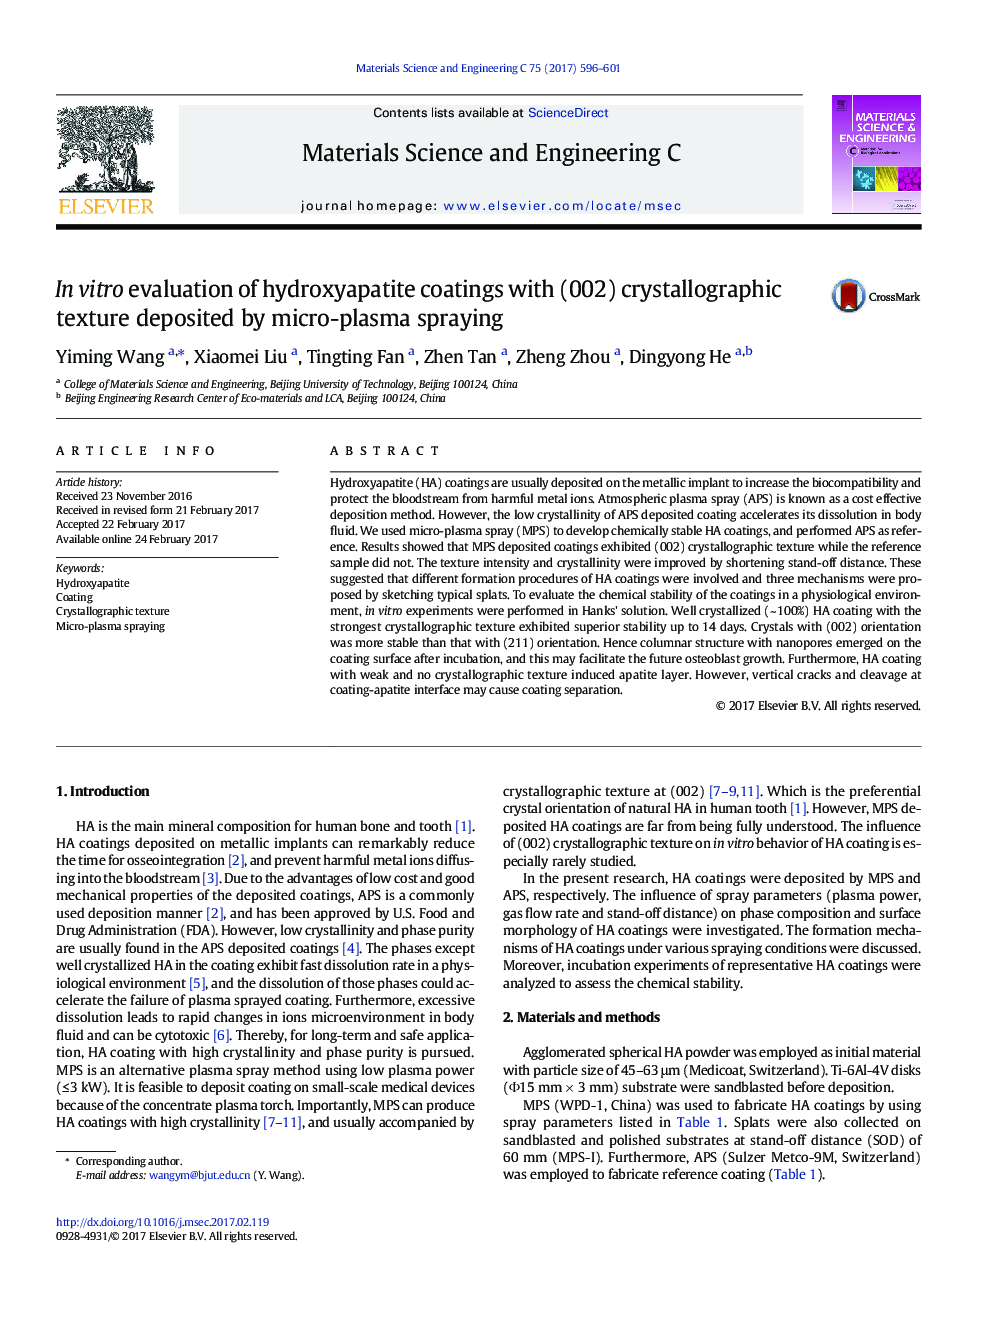 ارزیابی در محیط آزمایشگاهی پوشش های هیدروکسی آپاتیت با بافت کریستالوگرافی (002) سپرده شده توسط اسپری میکرو پلاسما 